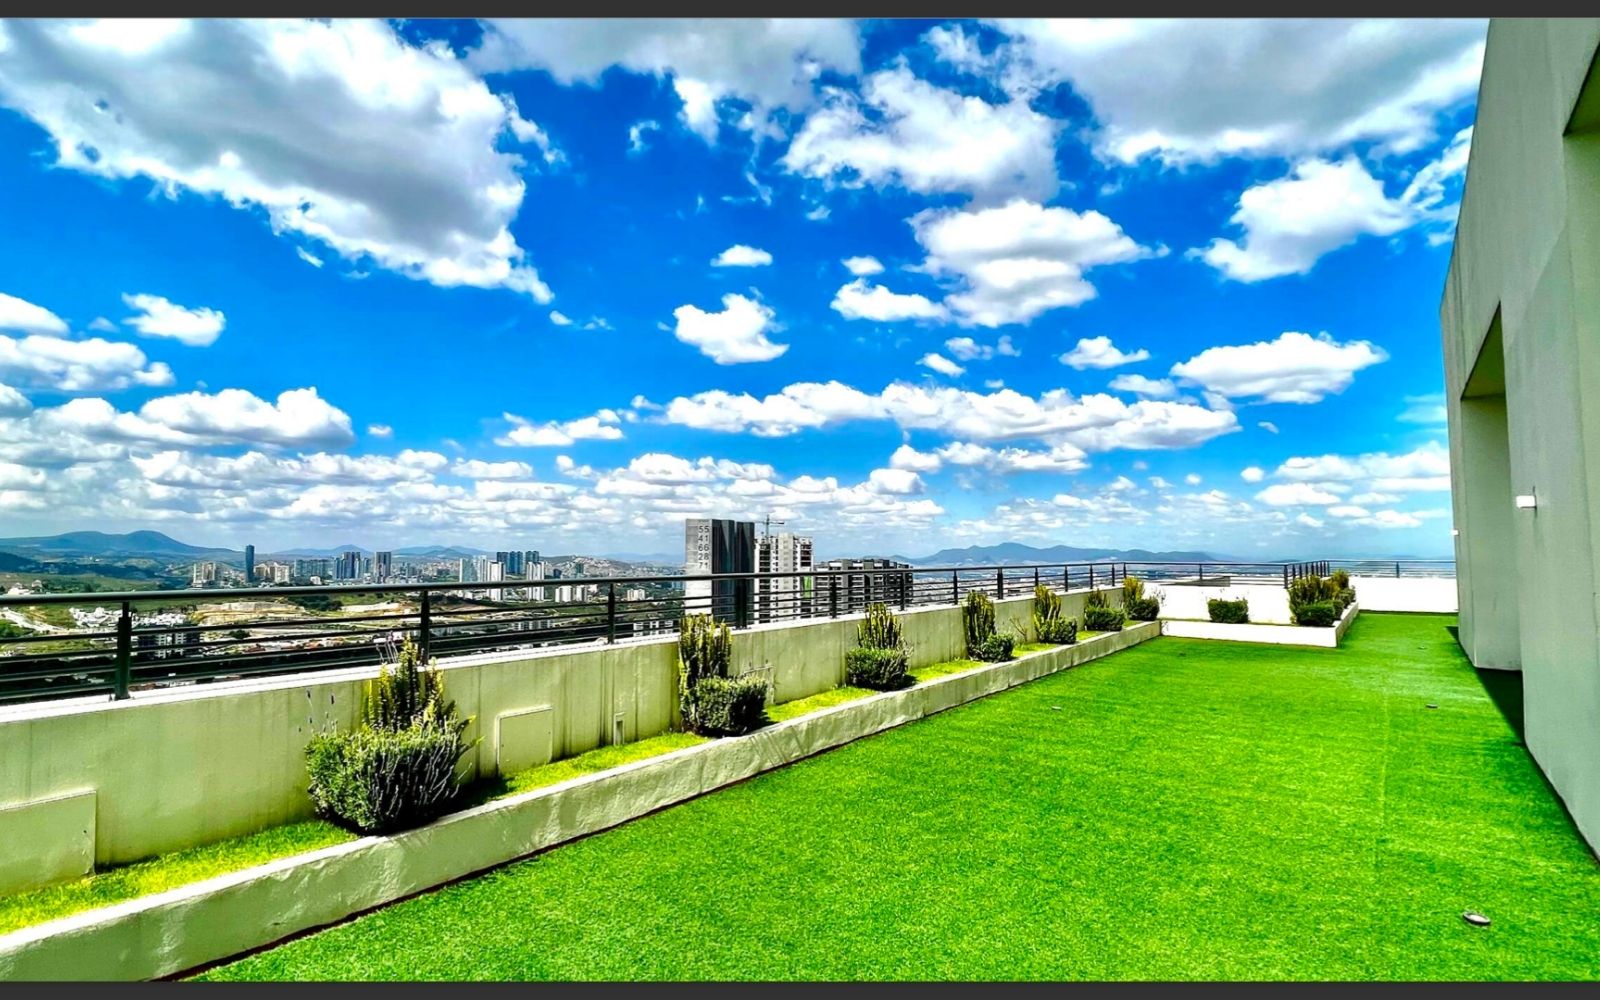 Condominium with pool, terrace, Yoga Area, for sale Roma Norte CDMX.